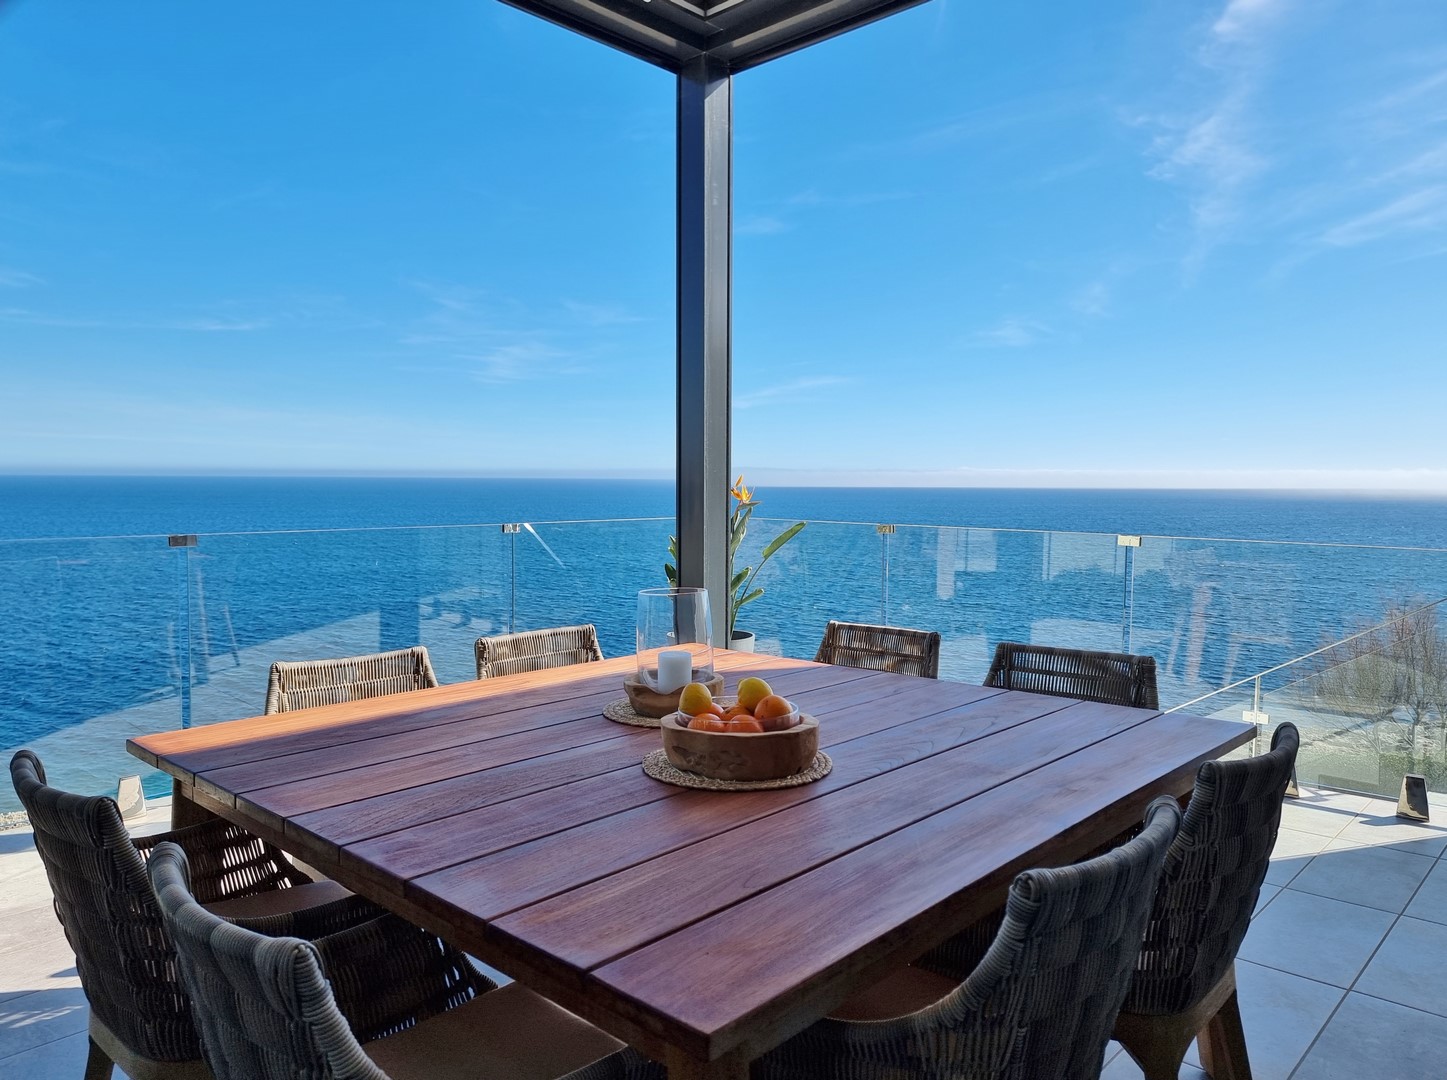 CALA MURADA: Moderne Neubau-Villa mit Gäste-Apartment und spektakulärem Meerblick aus der ersten Reihe in strandnaher, privilegierter Lage